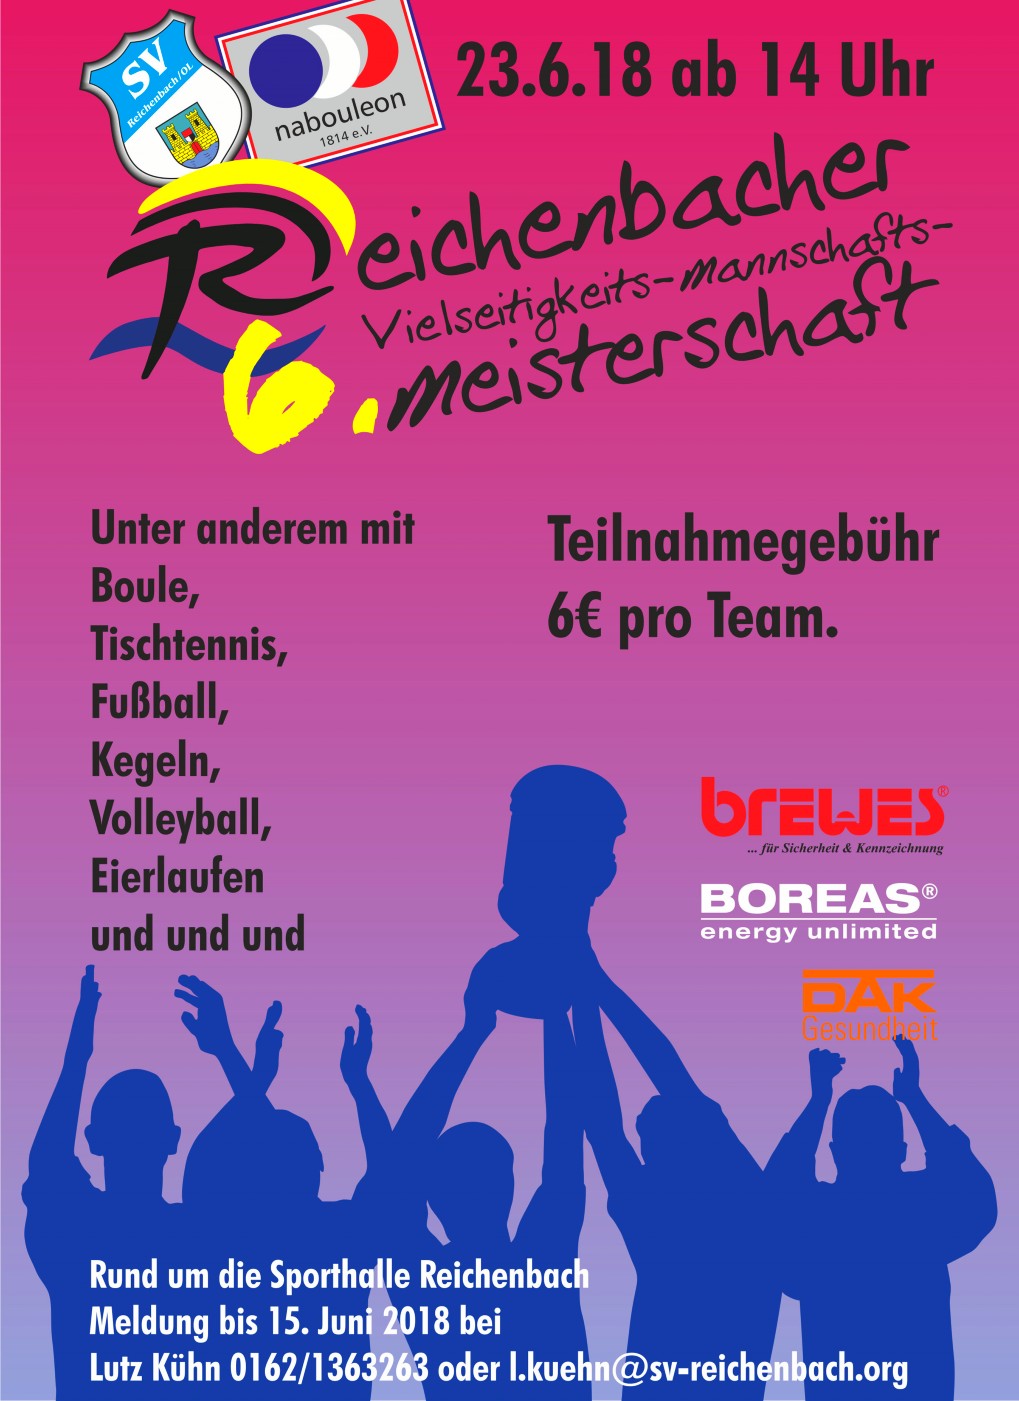 6. Reichenbacher Vielseitigkeits-Mannschafts-Meisterschaft